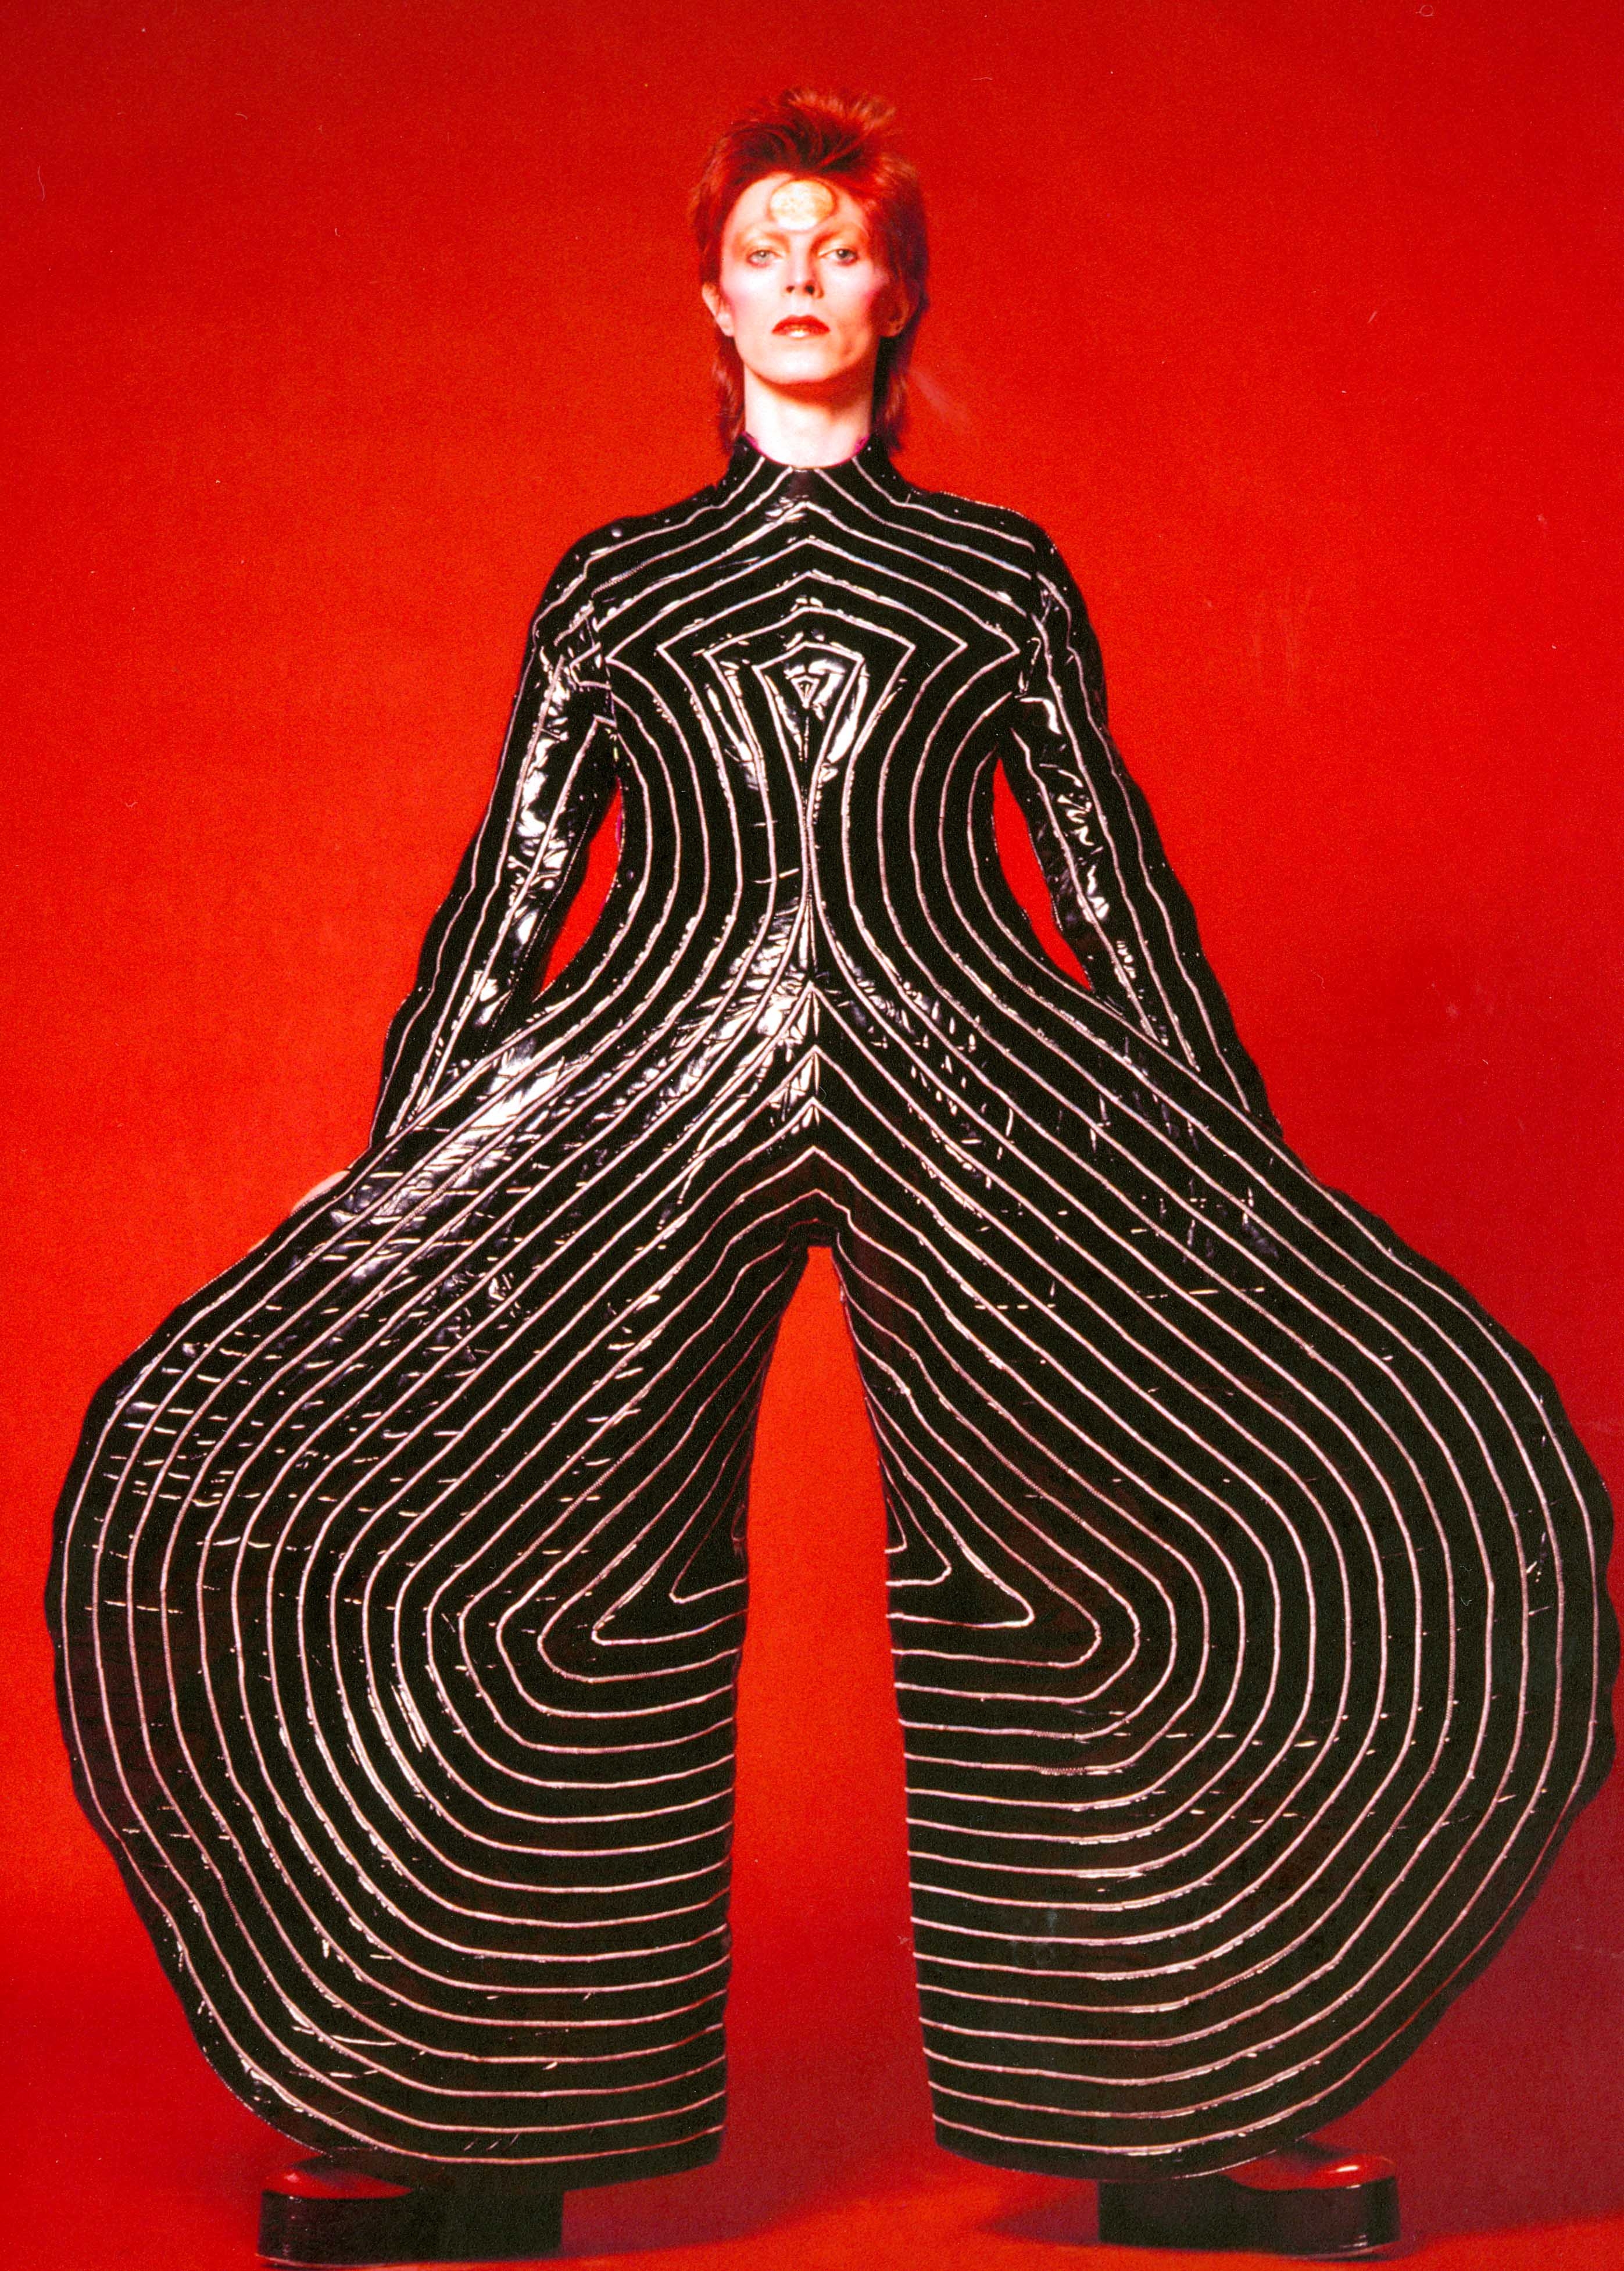 TRAJE DE VINIL “TOKYO POP” USADO NA TURNÊ ALADDIN SANE (1973) Graças a seu porte elegante e à seriedade de sua expressão, Bowie sabe dar densidade & seriedade para looks absurdos como esse assinado por Kansai Yamamoto. Triunfal, maravilhoso!!